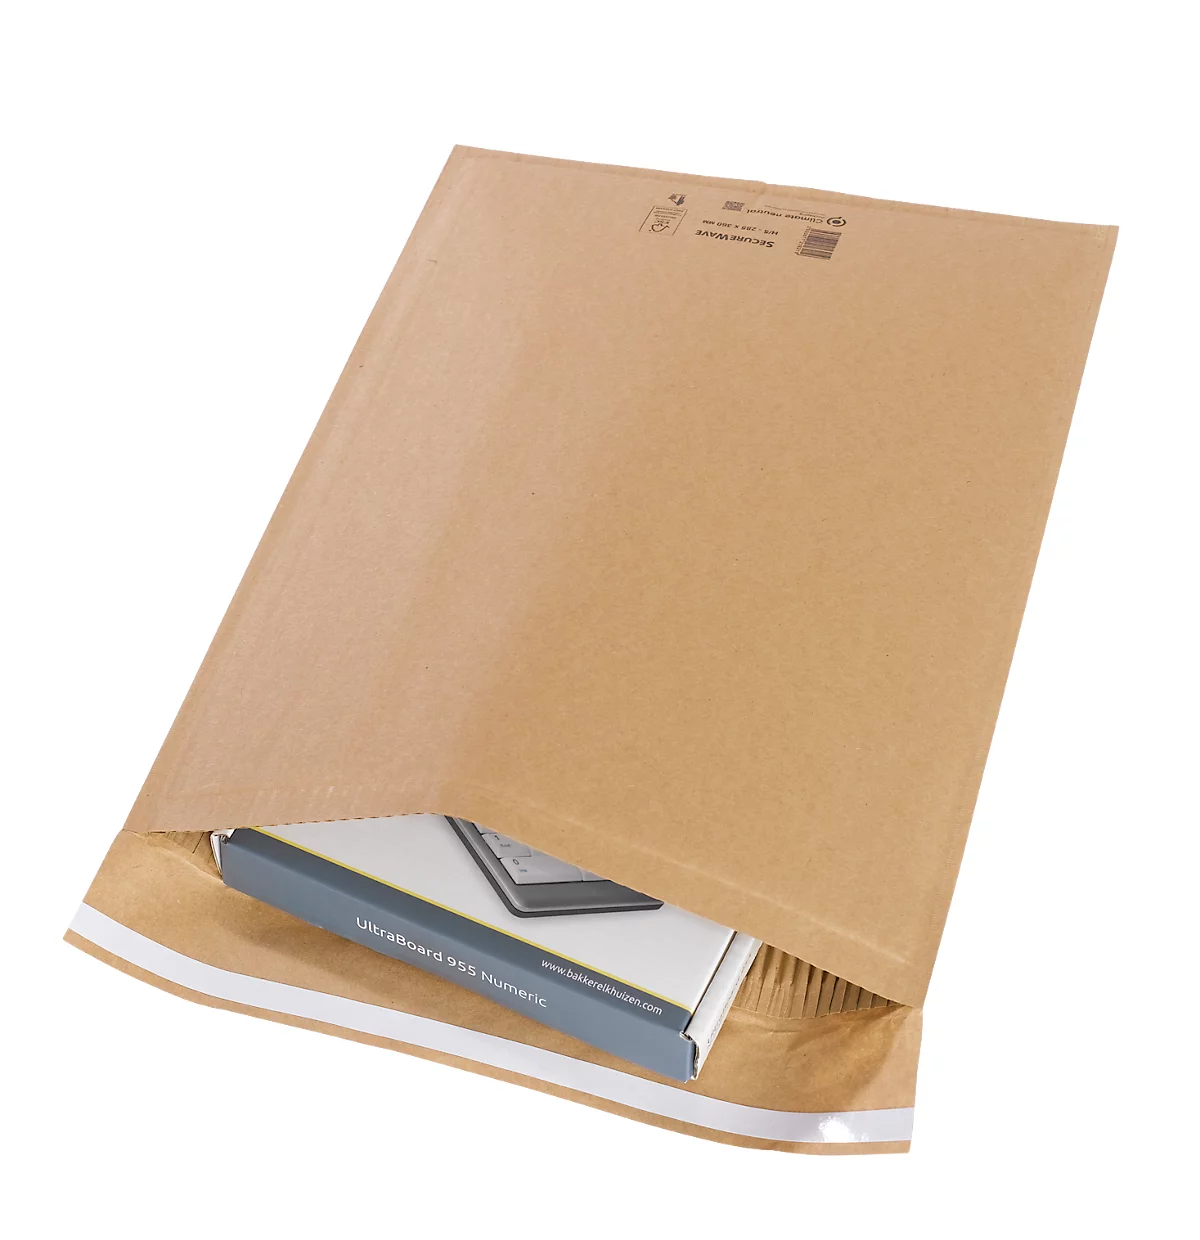 Sobres reciclados MD SecureWave Securepack, forro de papel, adhesivo sensible a la presión, neutros desde el punto de vista climático, papel 100% reciclado FSC, tamaño H/5, 285 x 360 mm, 75 unidades